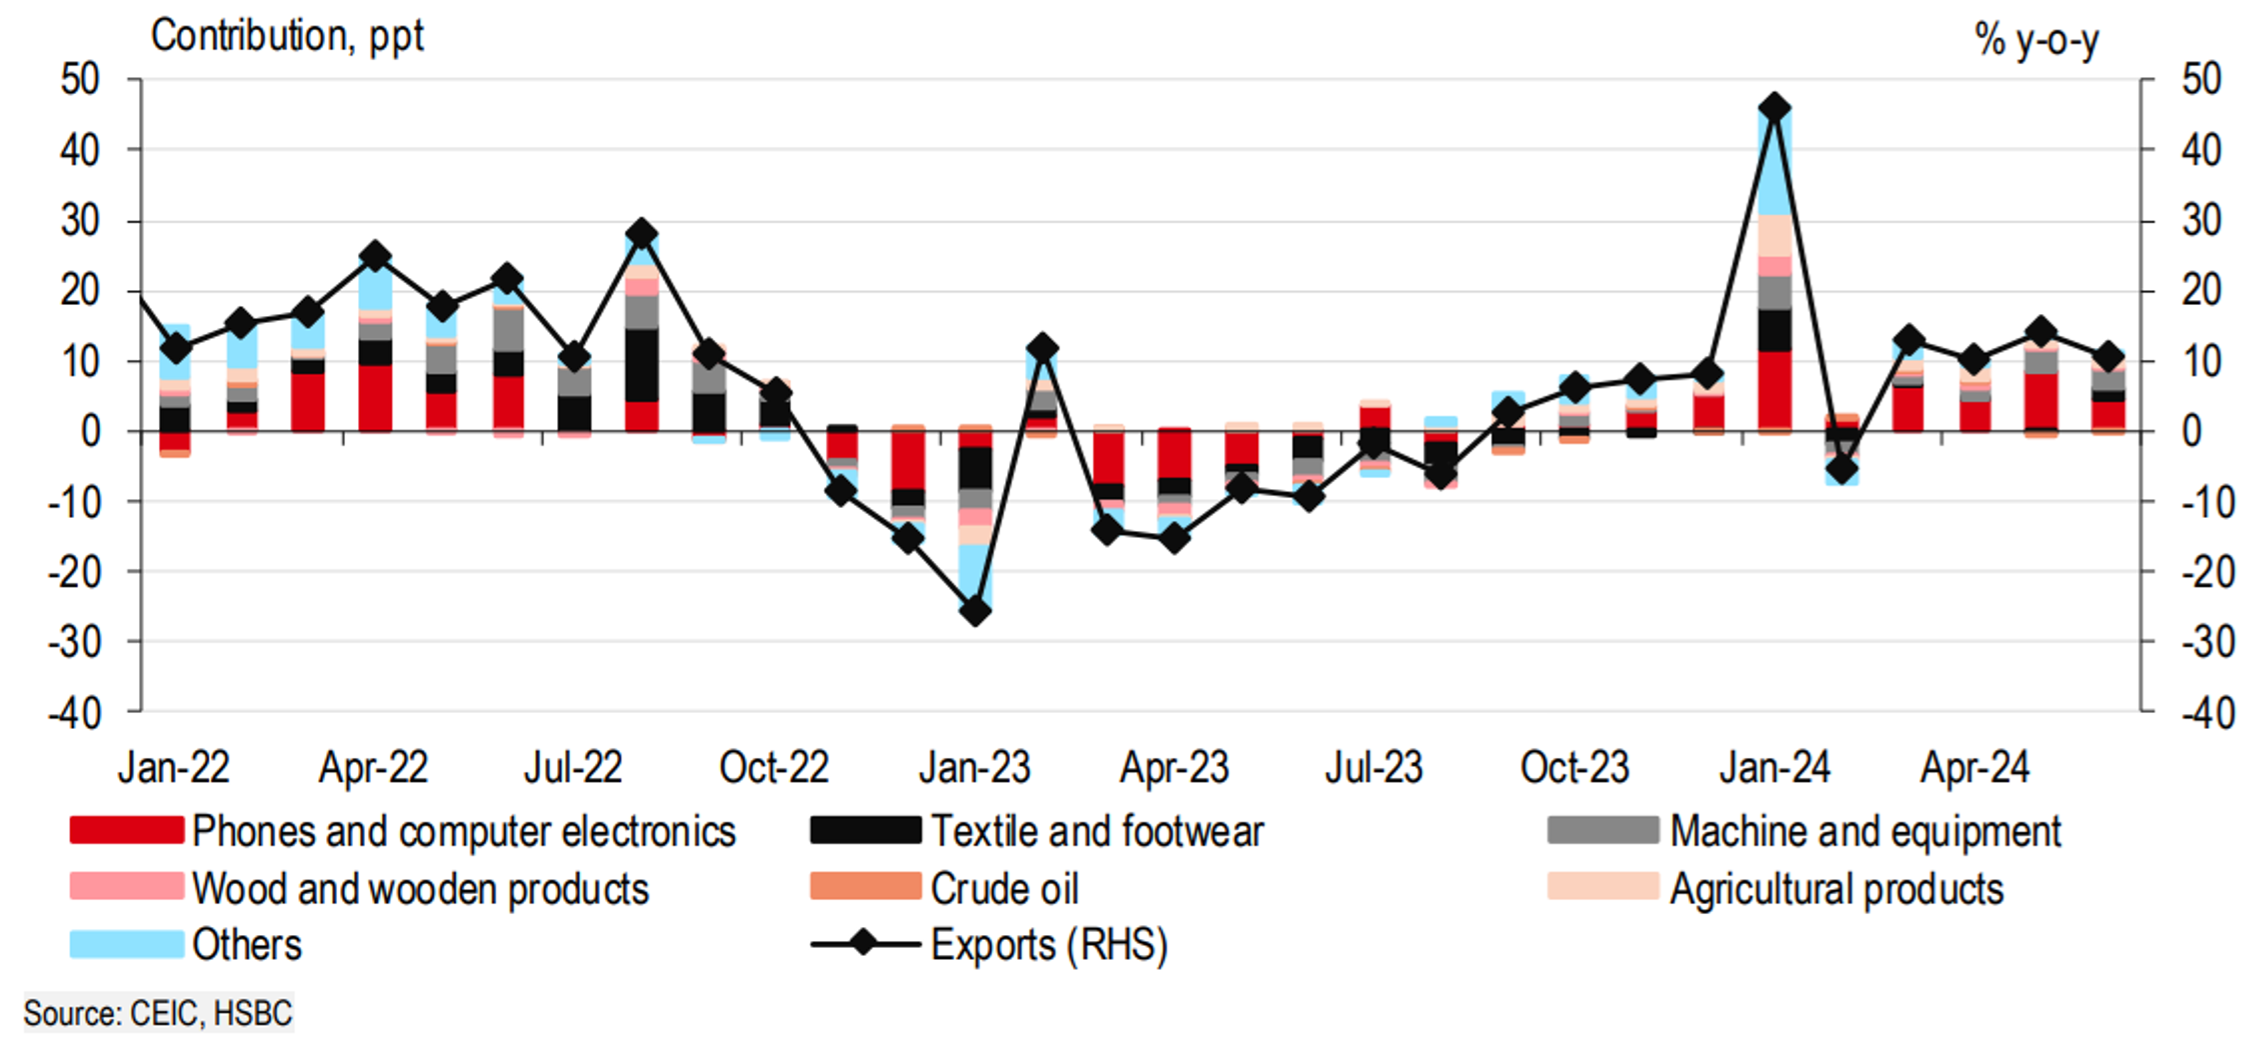 Phục hồi xuất khẩu vẫn chủ yếu ở mảng điện tử nhưng đã bắt đầu lan rộng